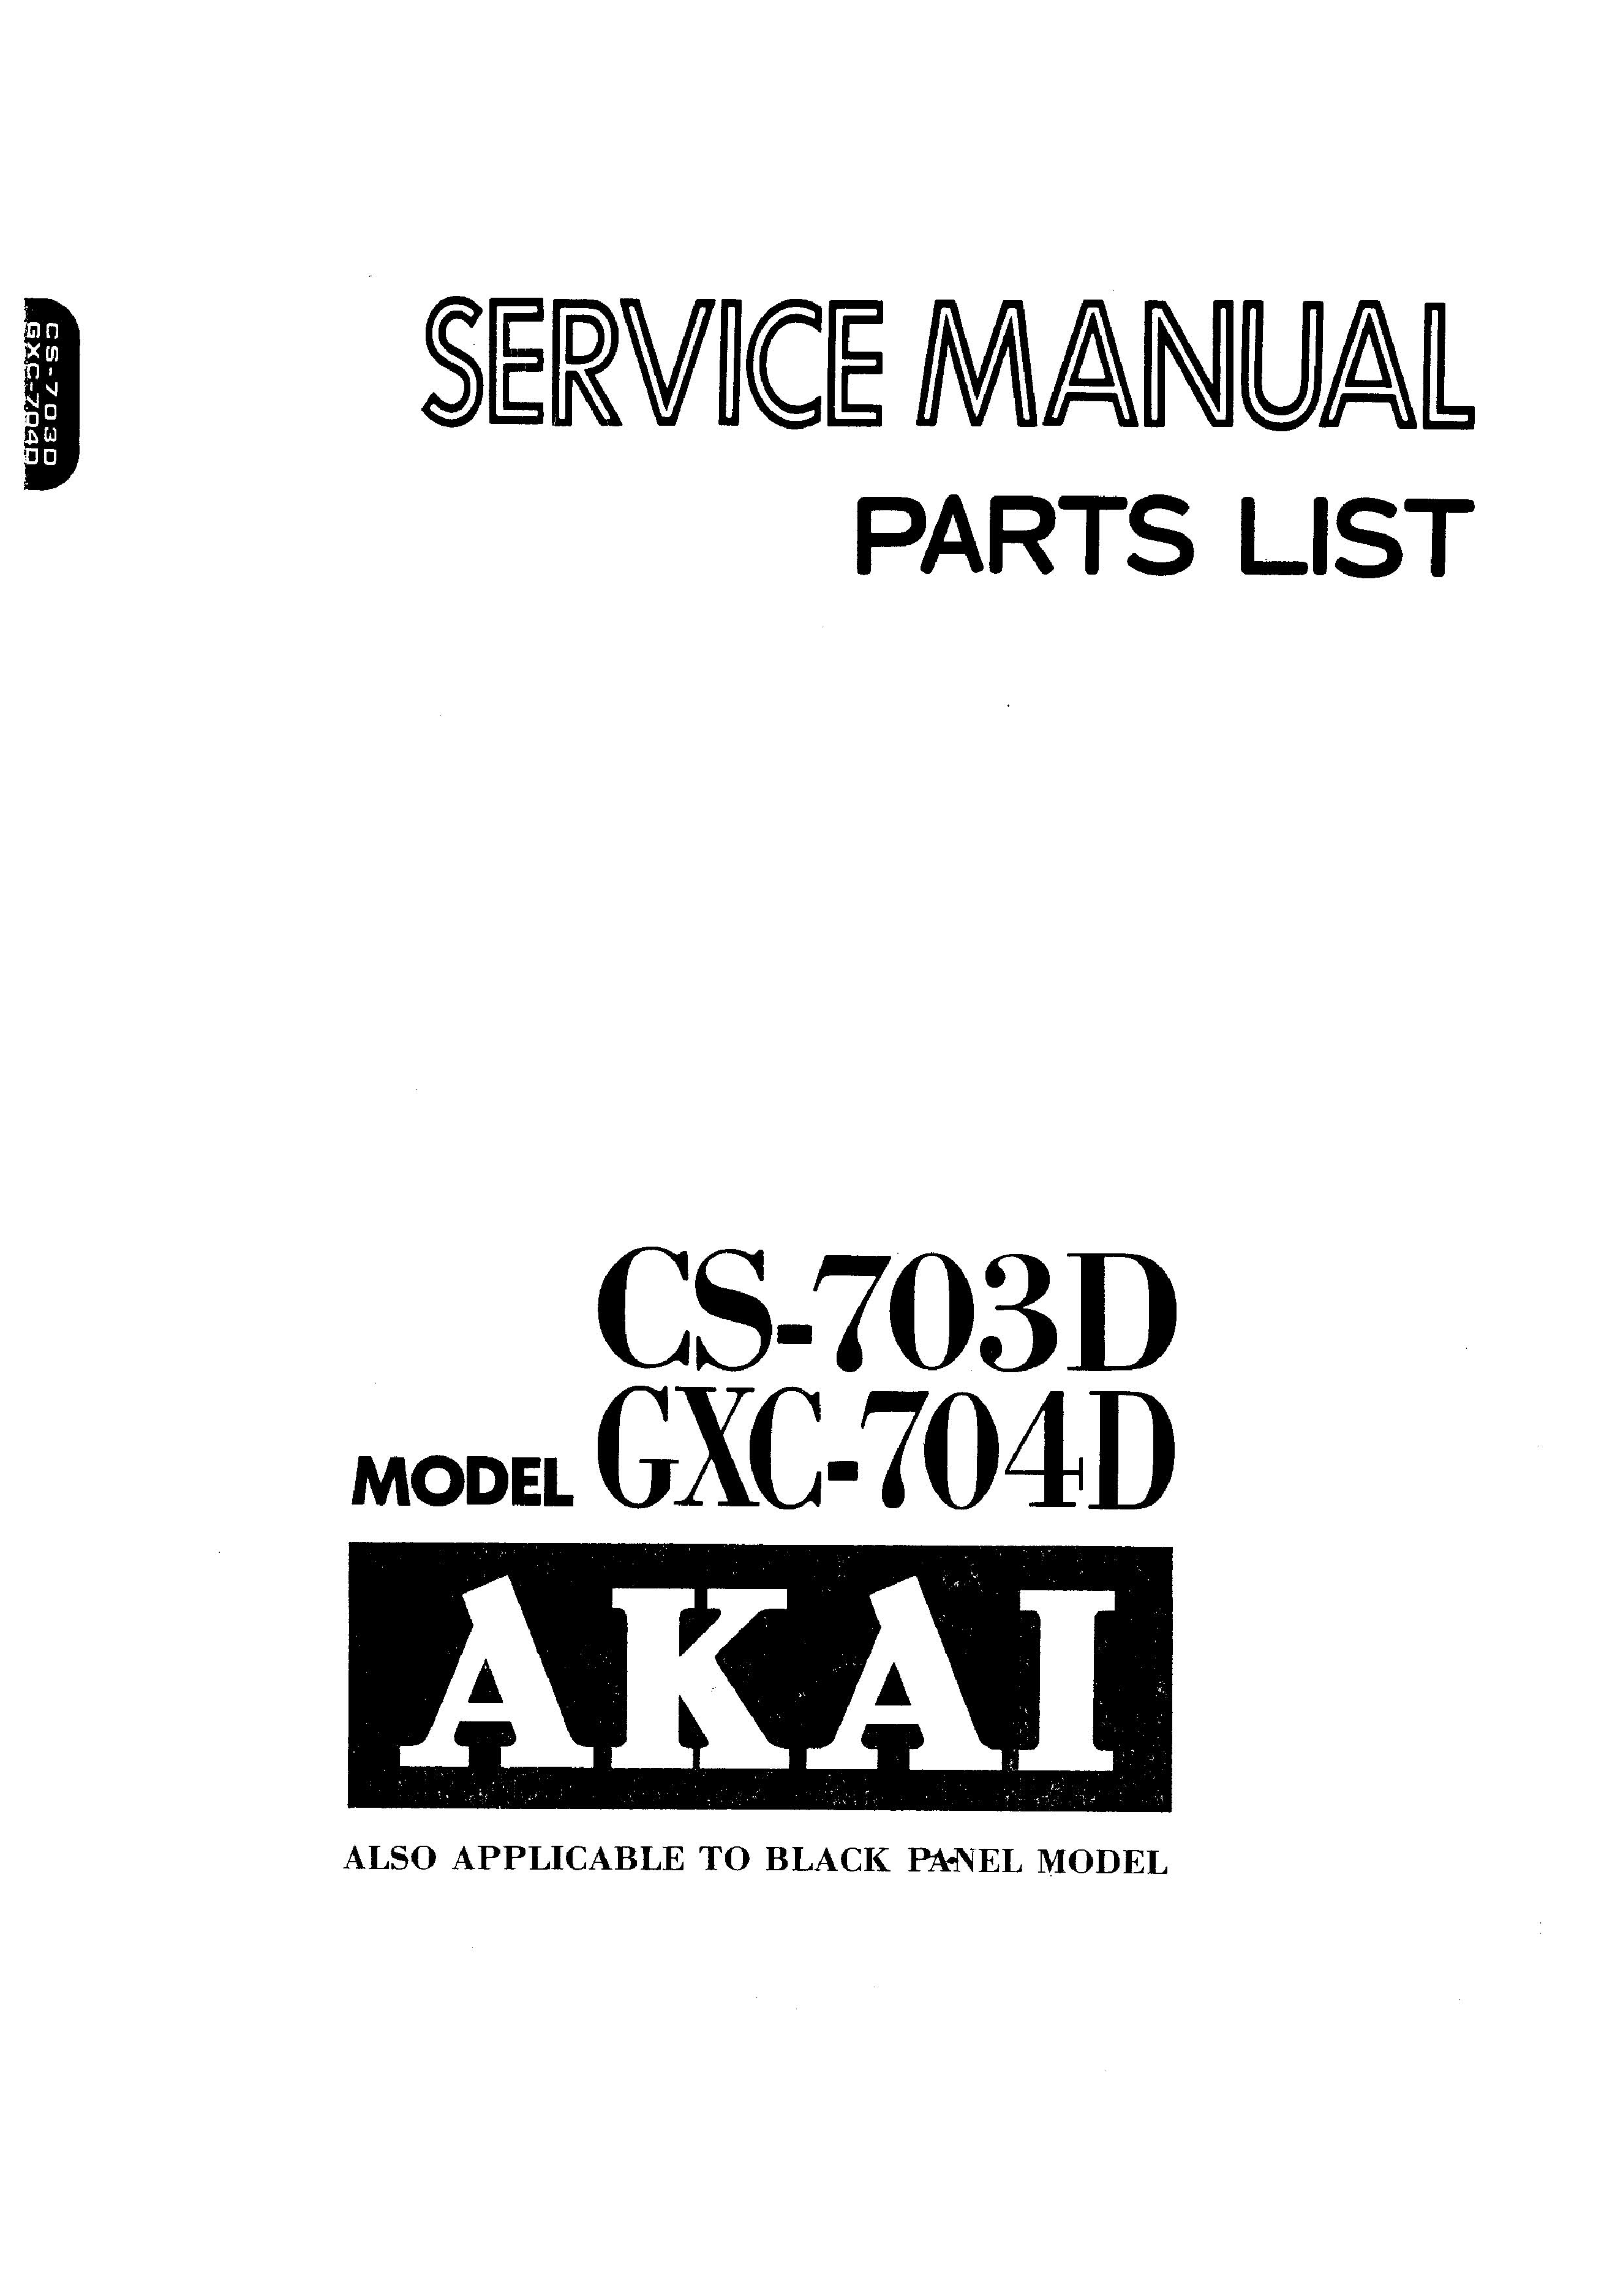 Bedienungsanleitung-Operating Instructions für Akai GXC-704 D 